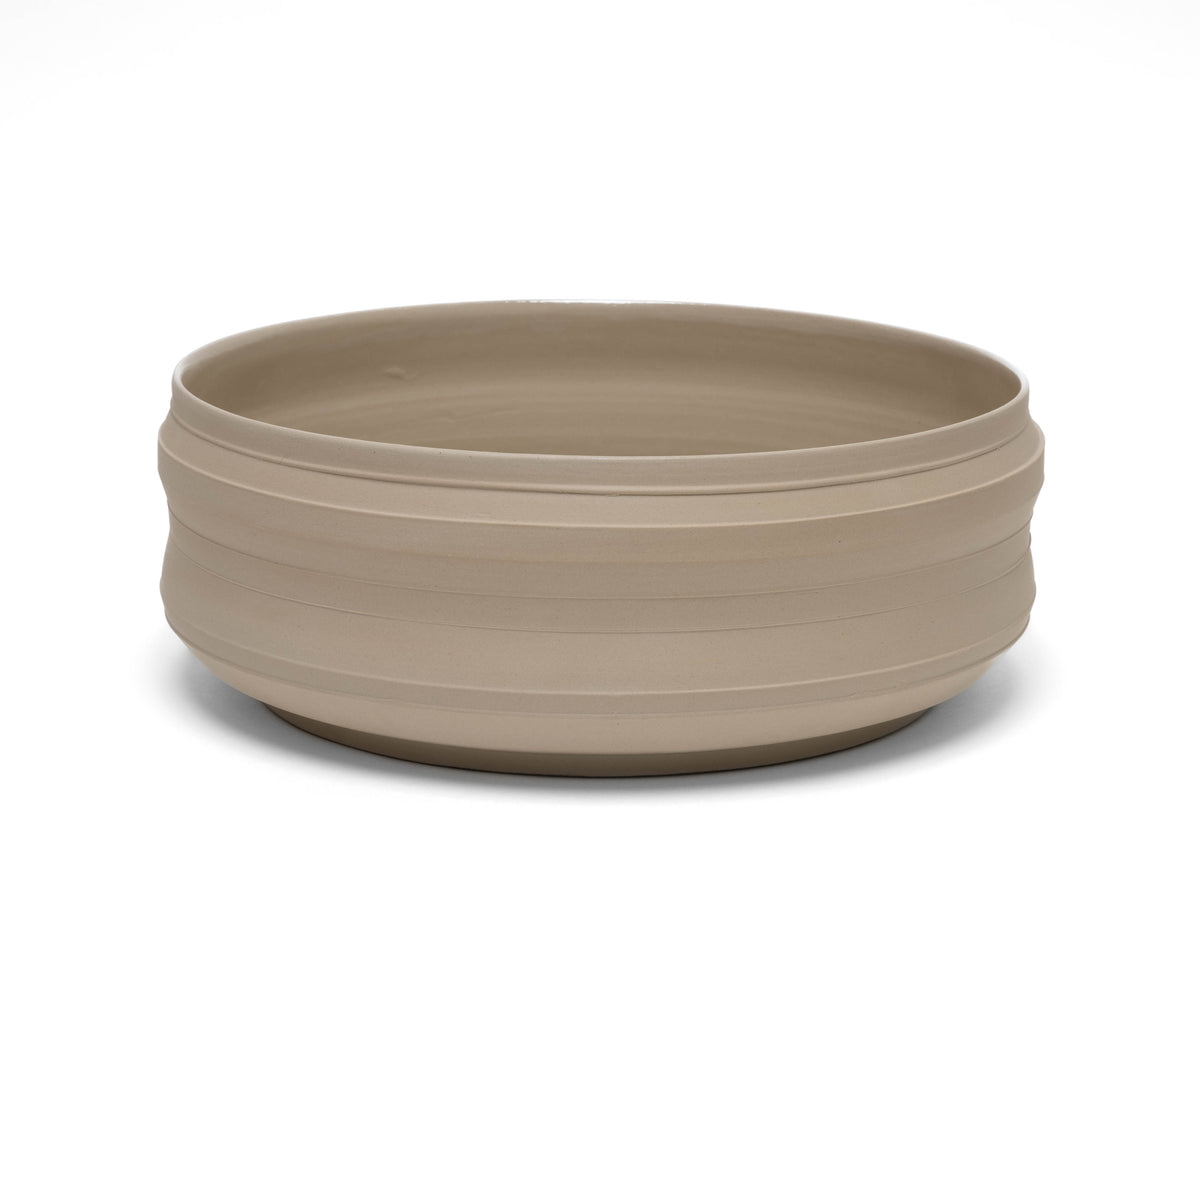 Bowl stoneware, unique piece